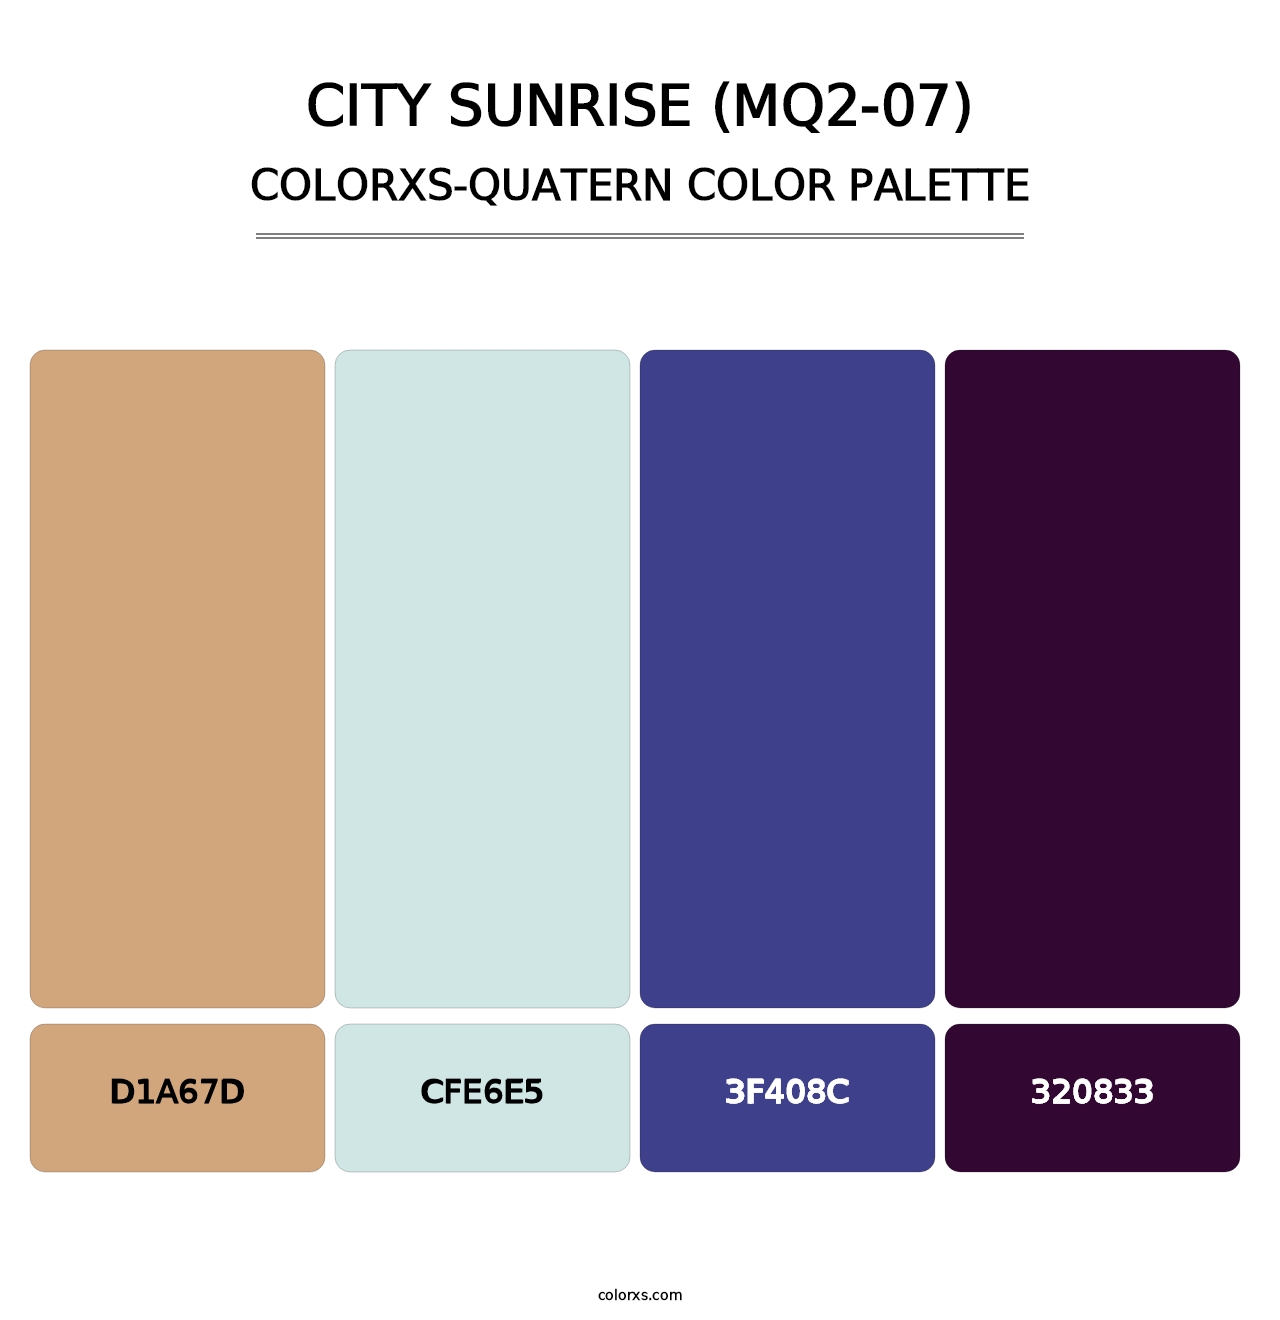 City Sunrise (MQ2-07) - Colorxs Quatern Palette